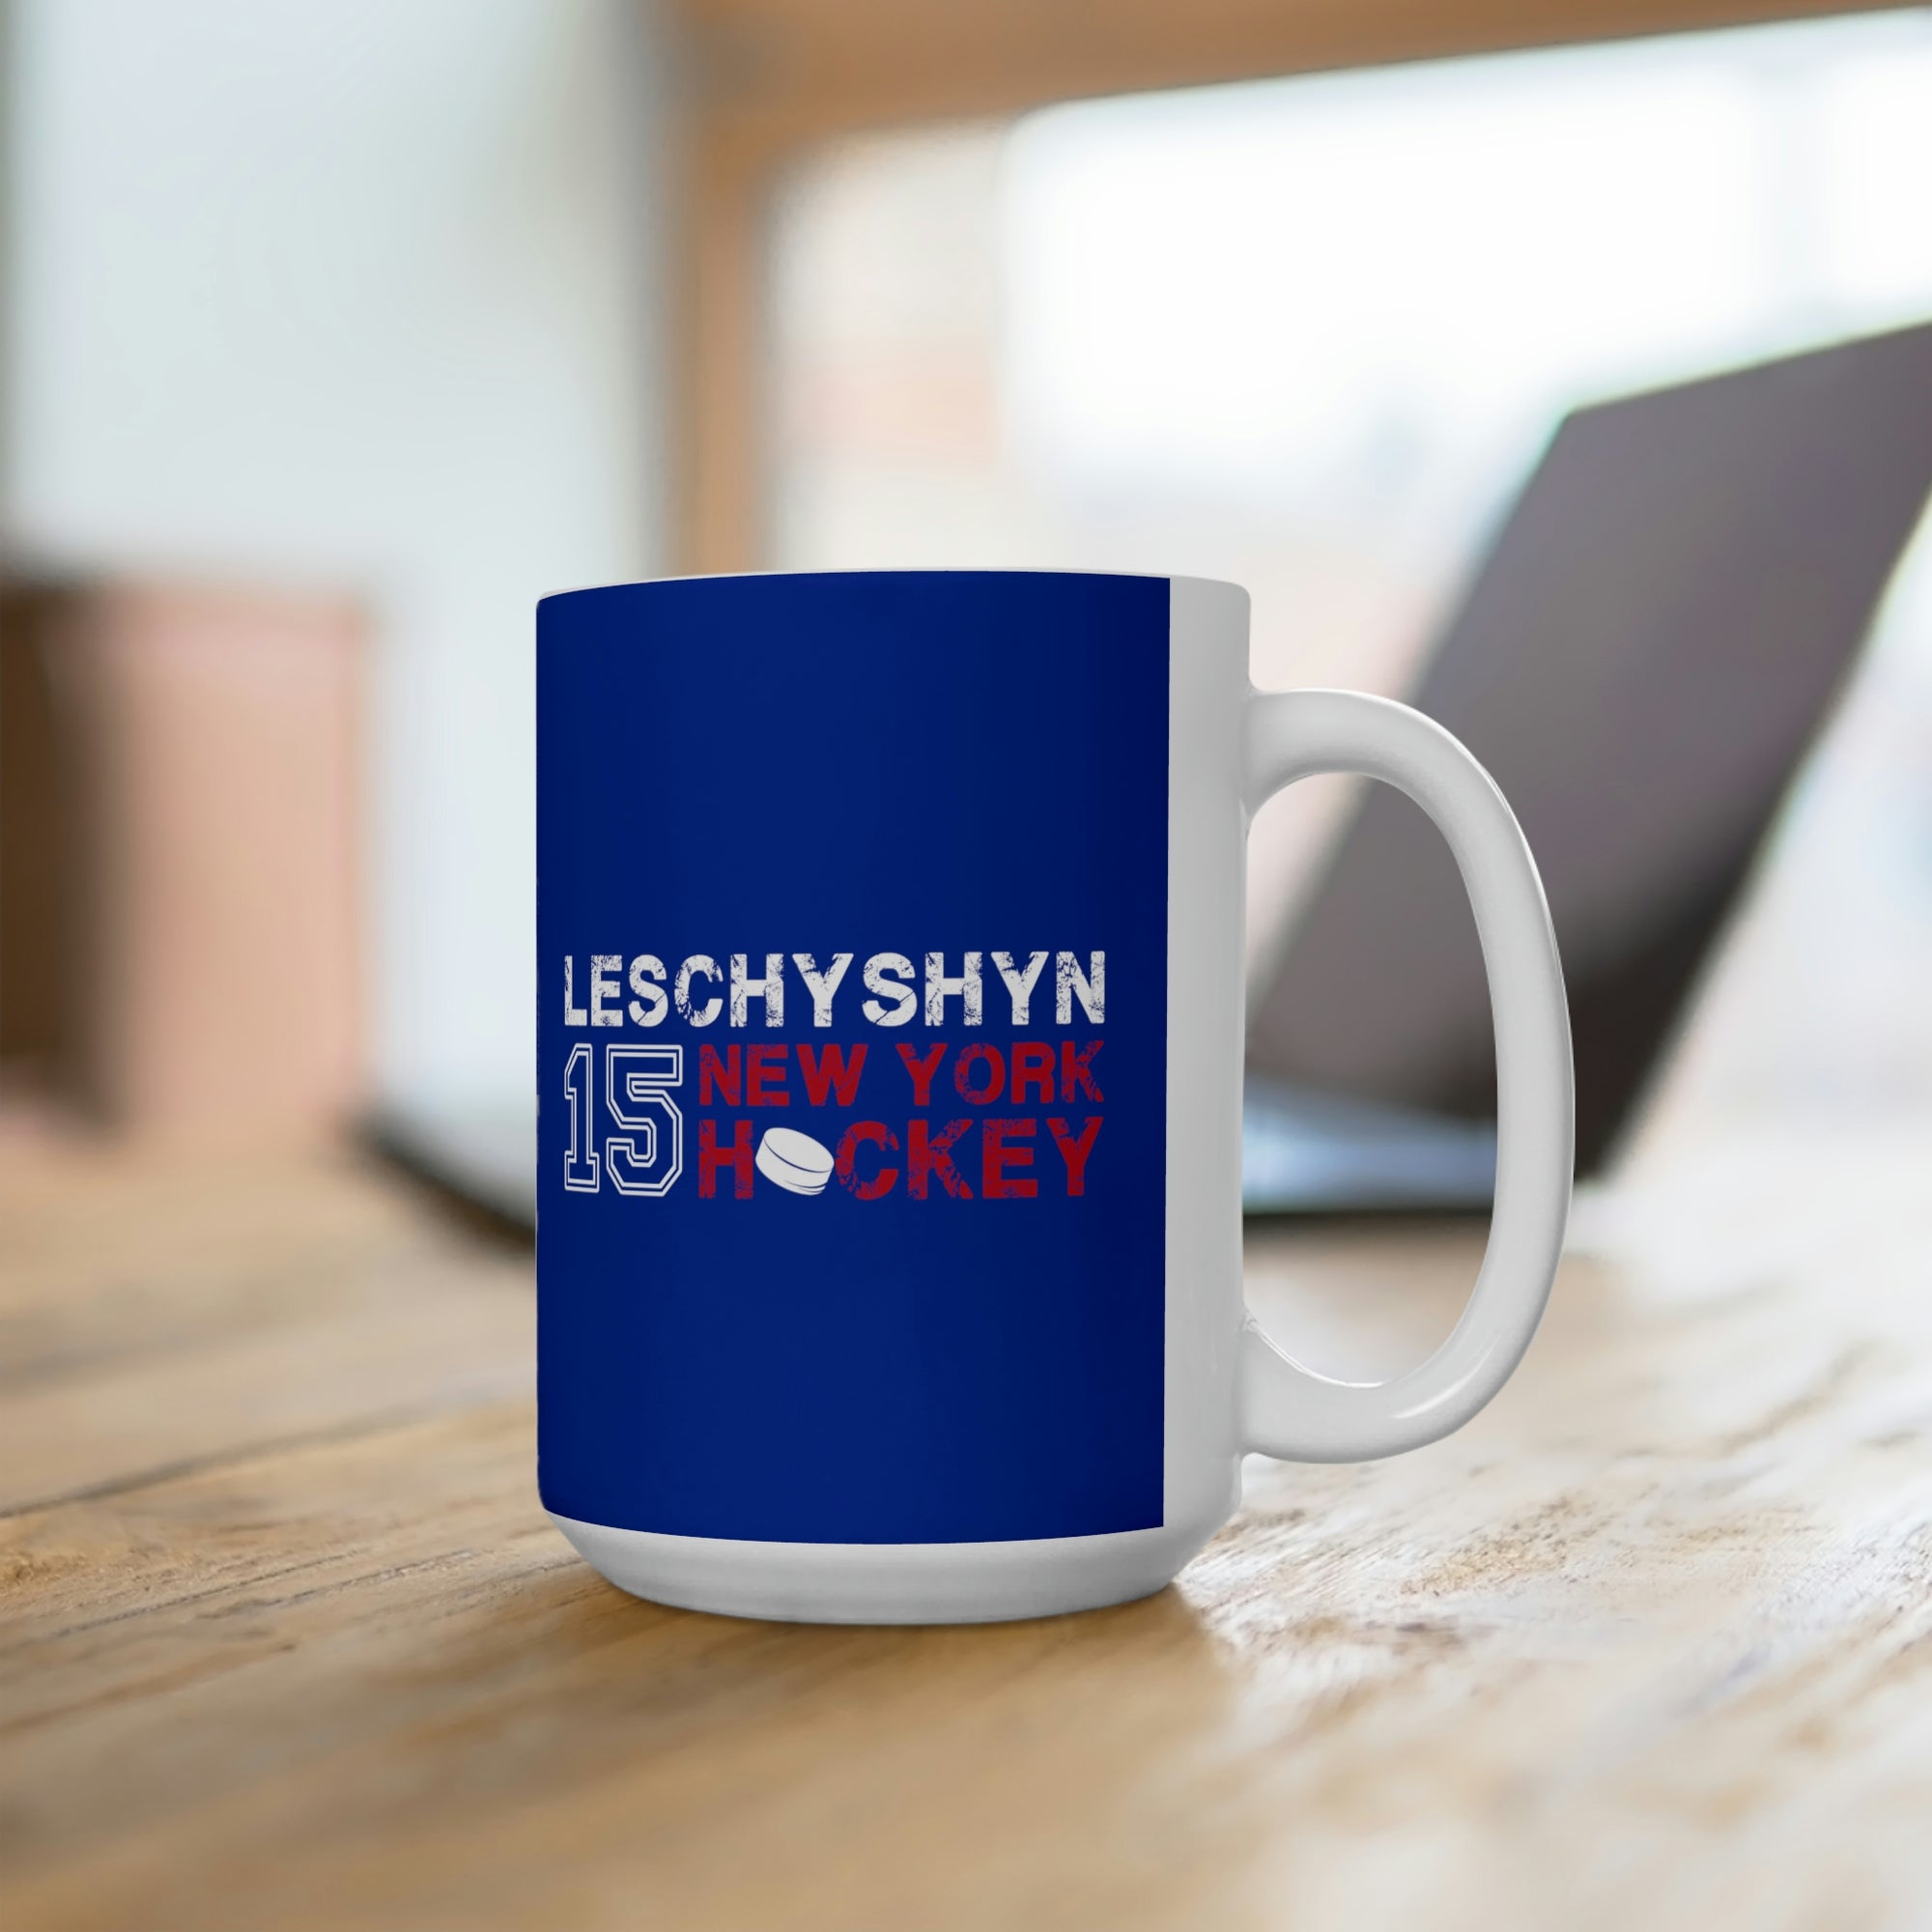 Leschyshyn 15 New York Hockey Ceramic Coffee Mug In Blue, 15oz